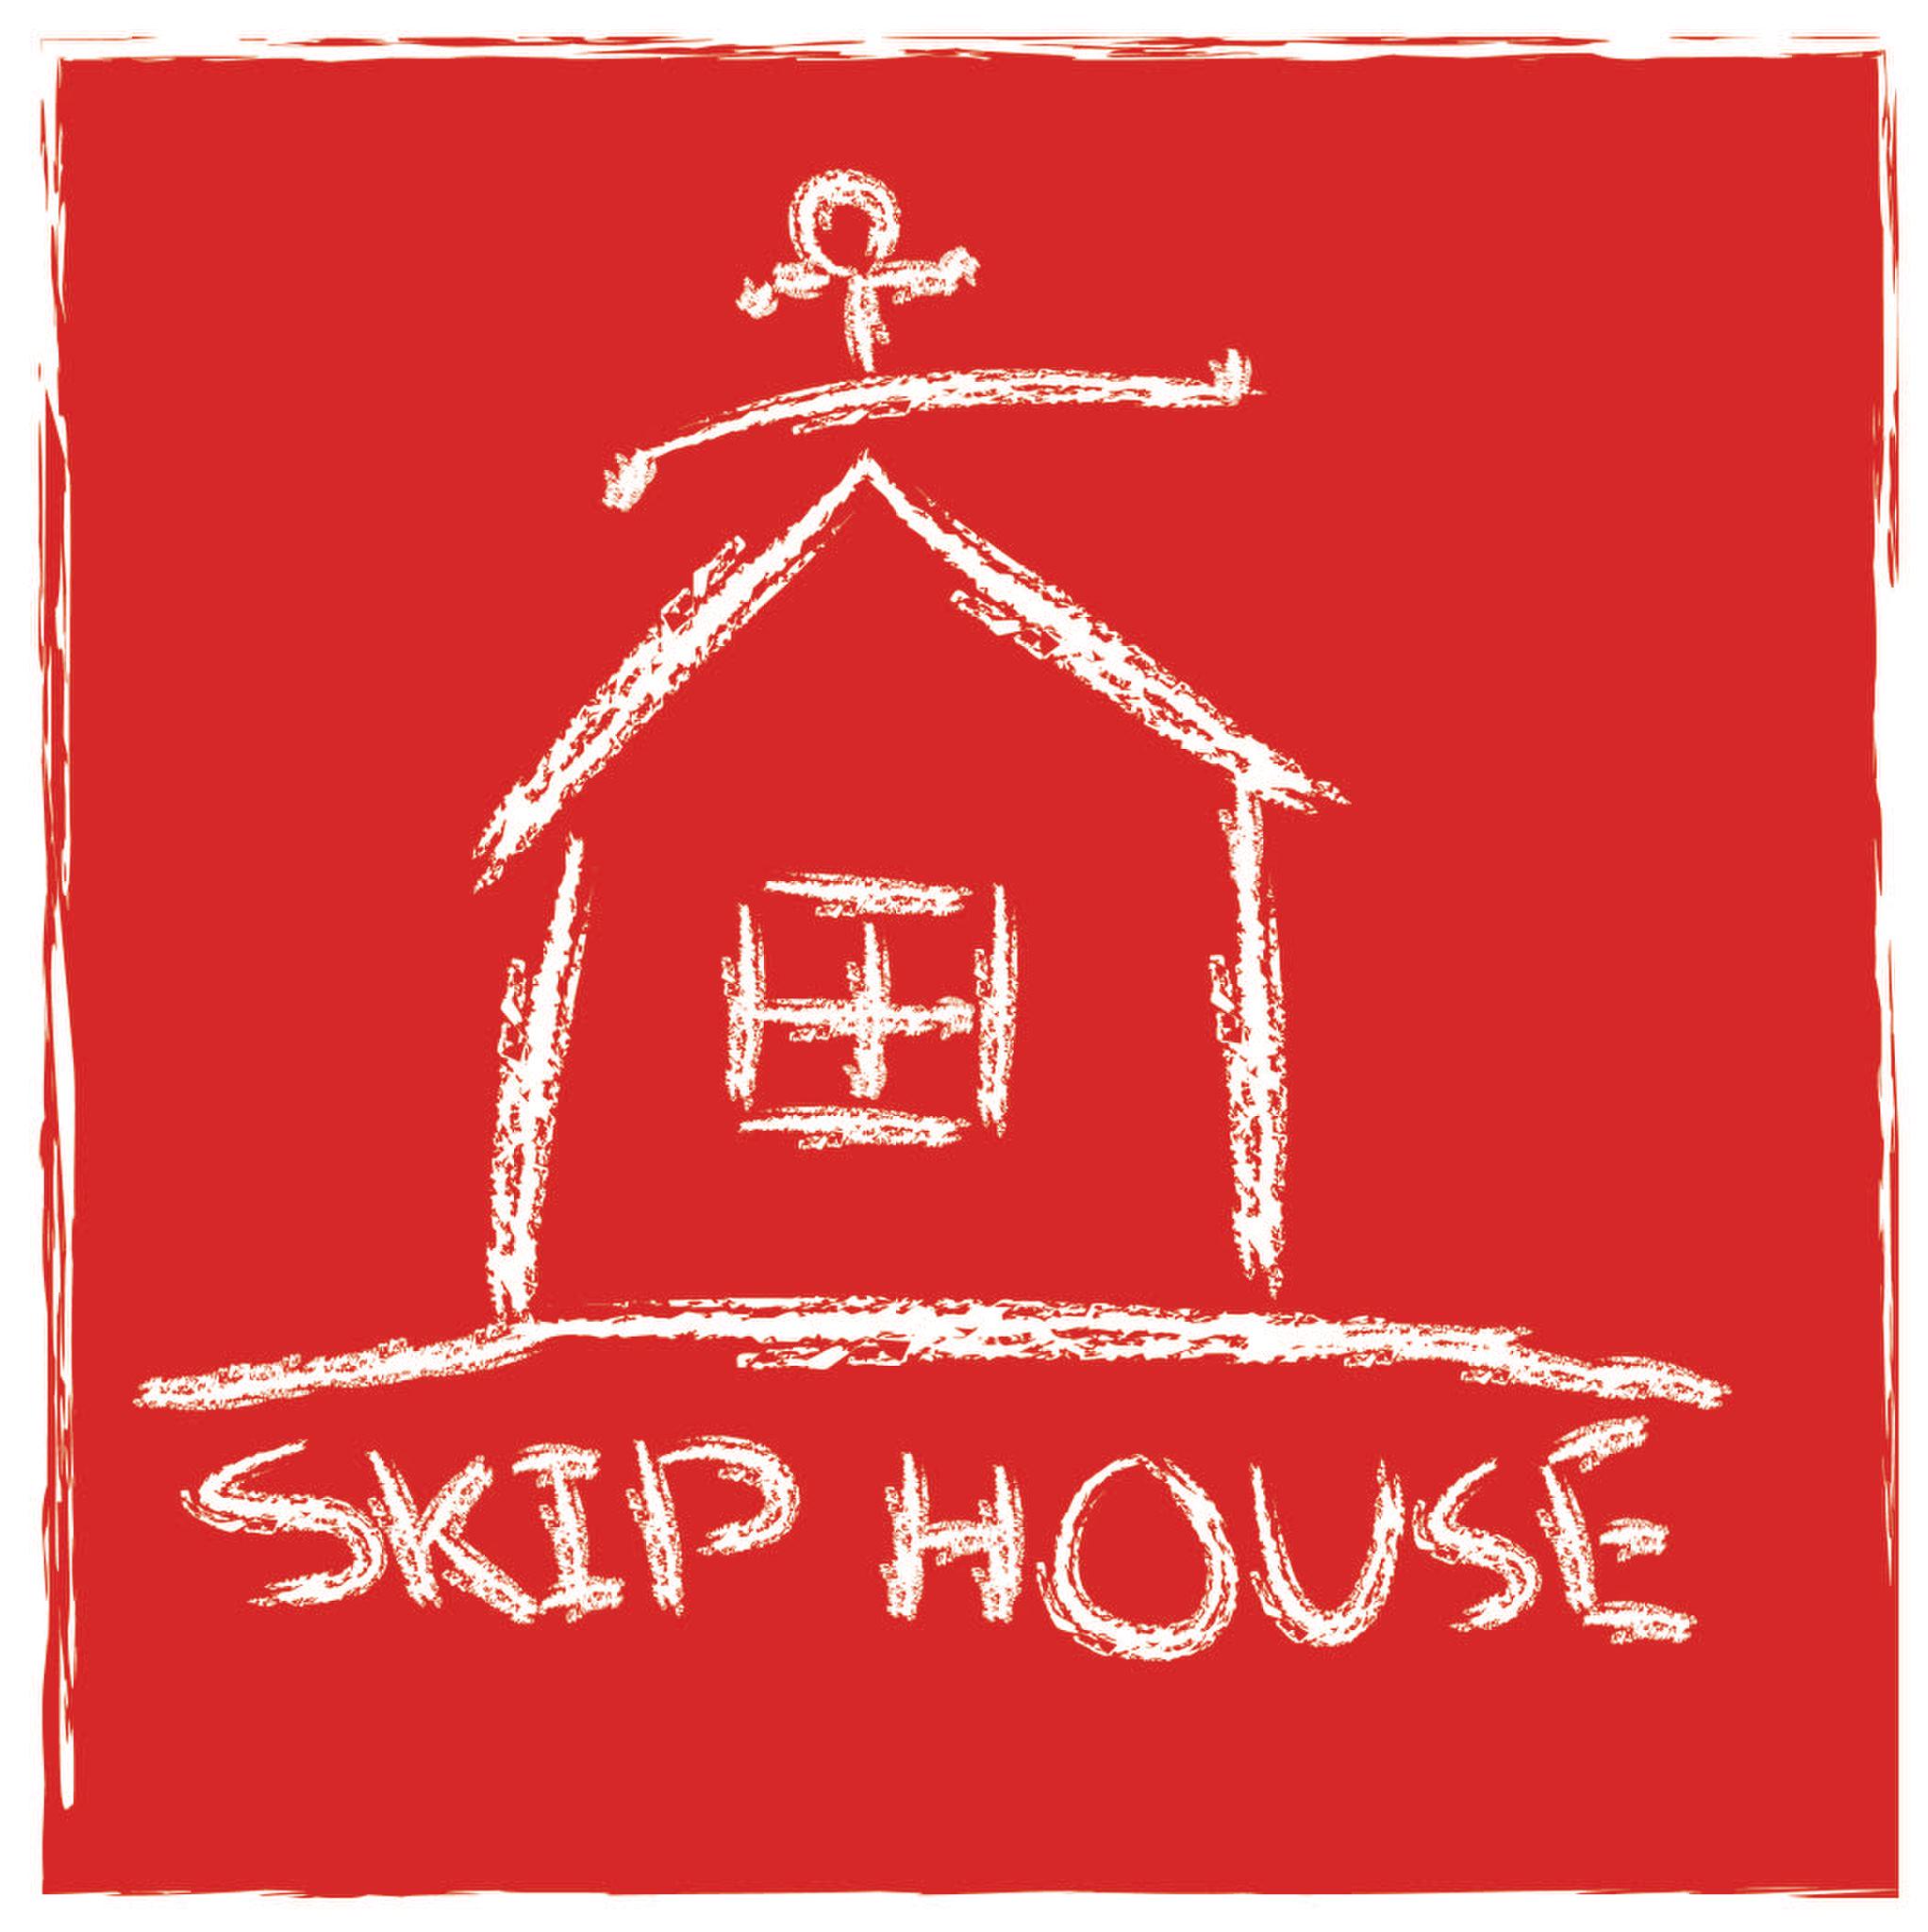 Skip House at El Rey Filling Station